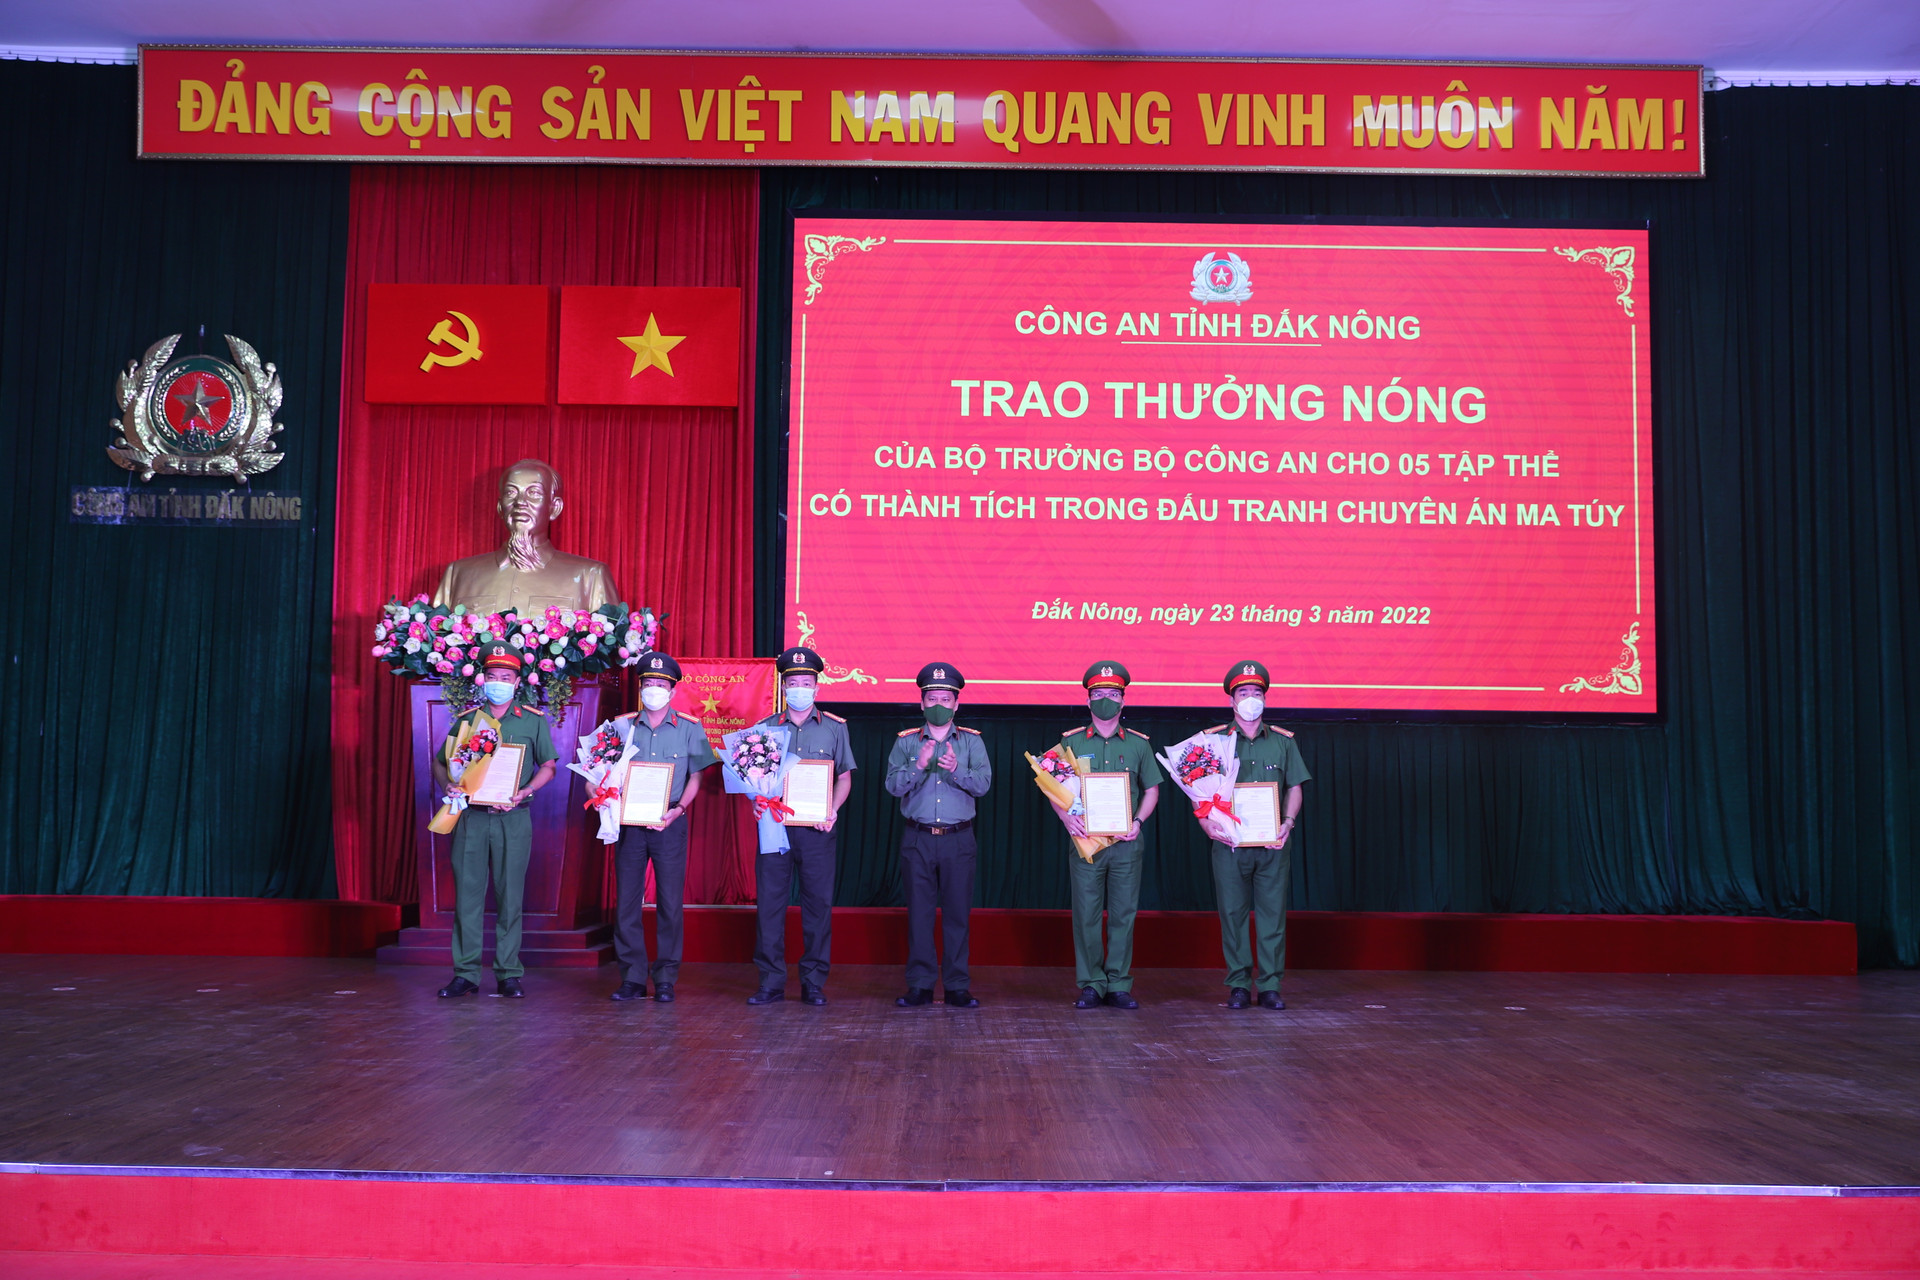 Đại tá Bùi Quang Thanh, Giám đốc Công an tỉnh Đắk Nông trao thưởng cho các đơn vị có thành tích xuất sắc trong đấu tranh chuyên án ma túy.